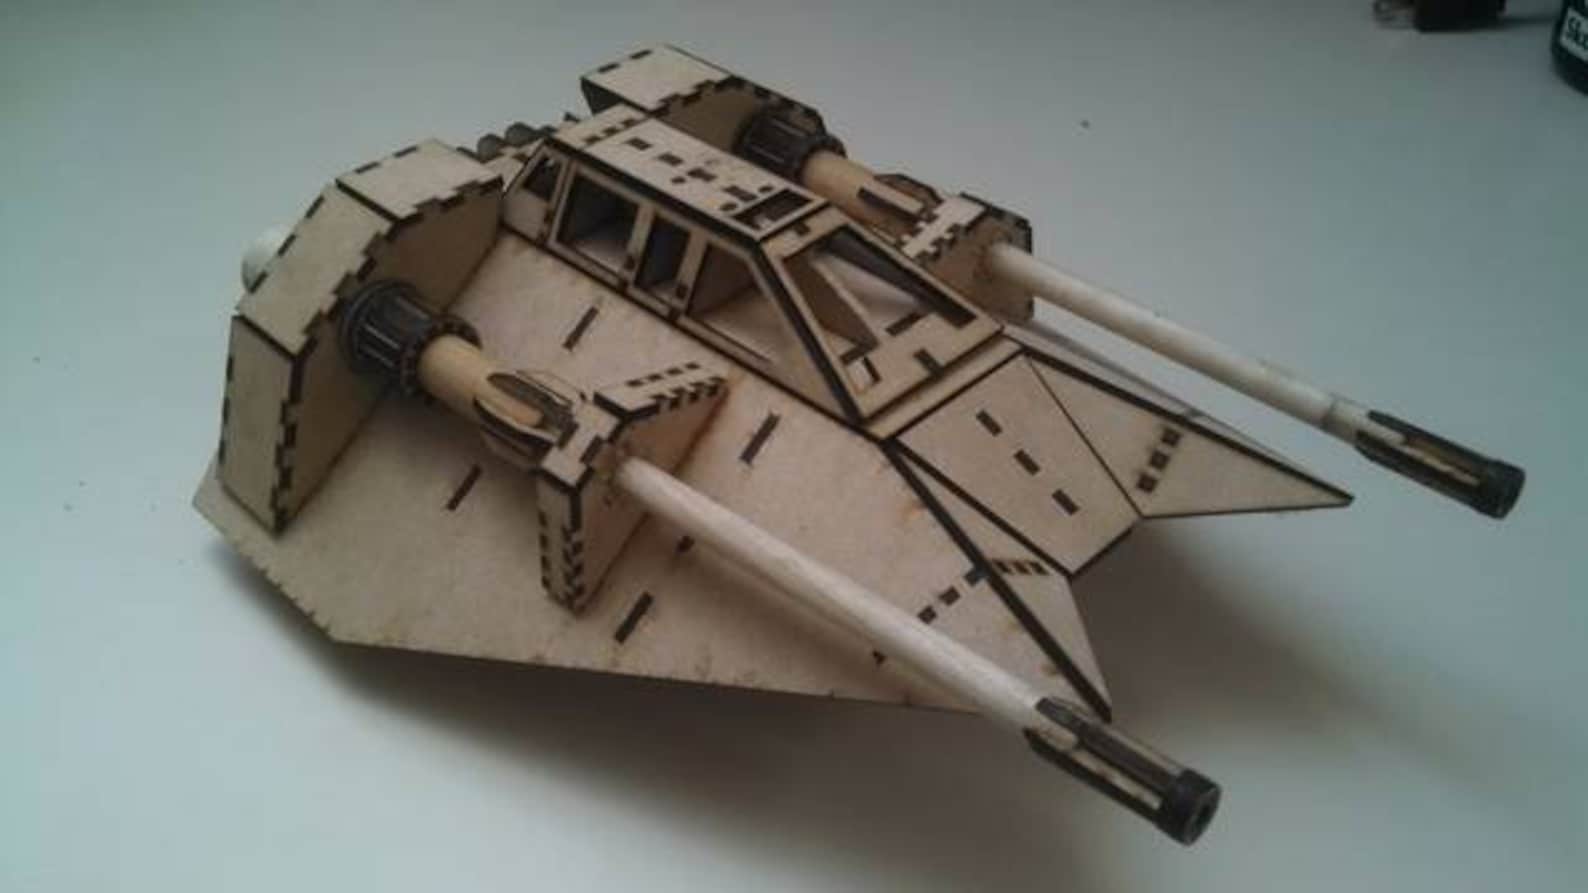 SW Laser Cut Starship Wooden Model 3D Kit 6-Pack Set 4